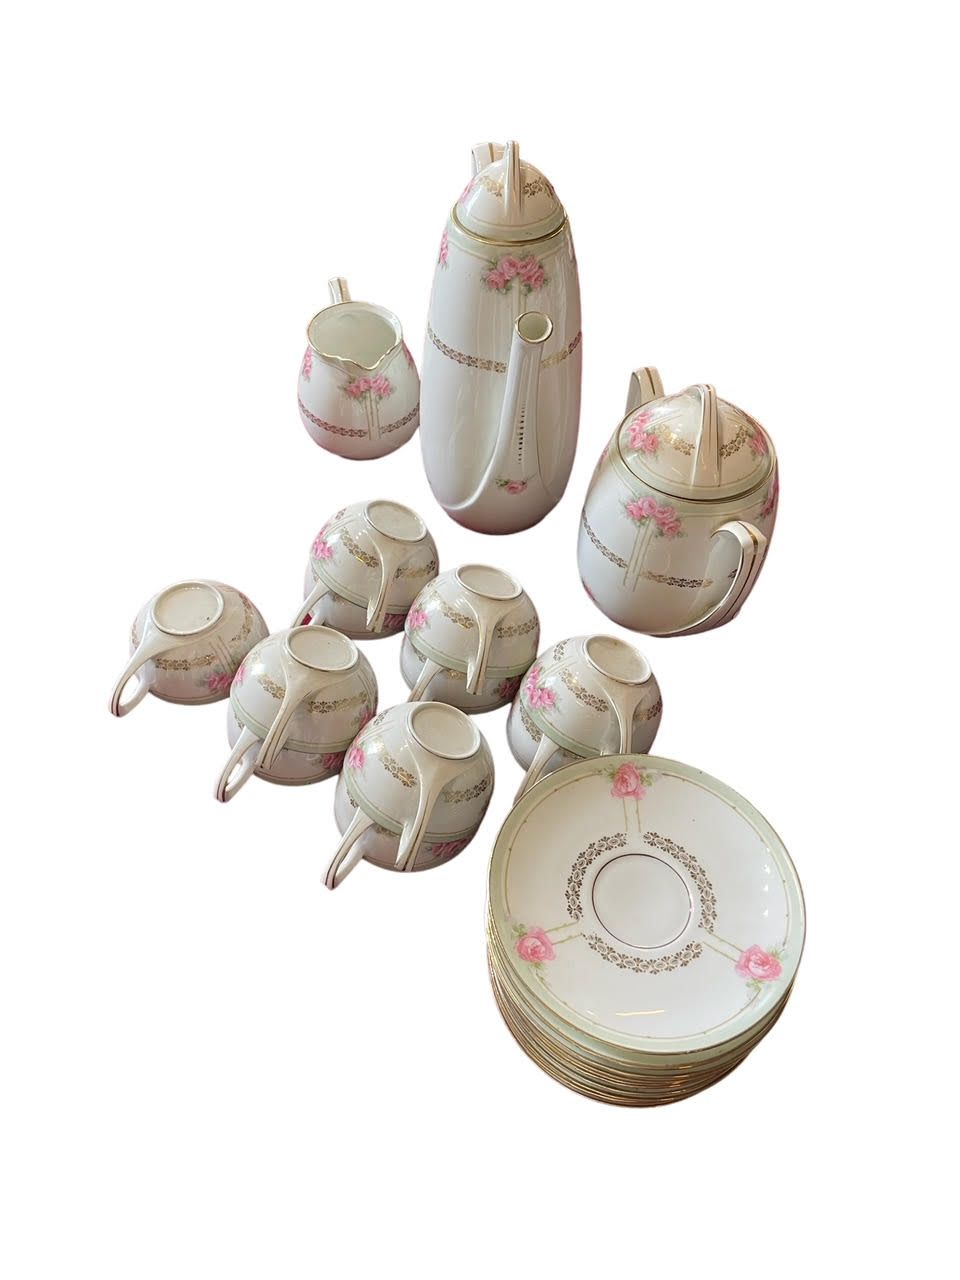 Null 咖啡服务，有三个形状的作品，白底和花卉装饰的瓷器，包括一个咖啡壶，一个牛奶壶，一个糖碗，11个杯子和它们的茶托。